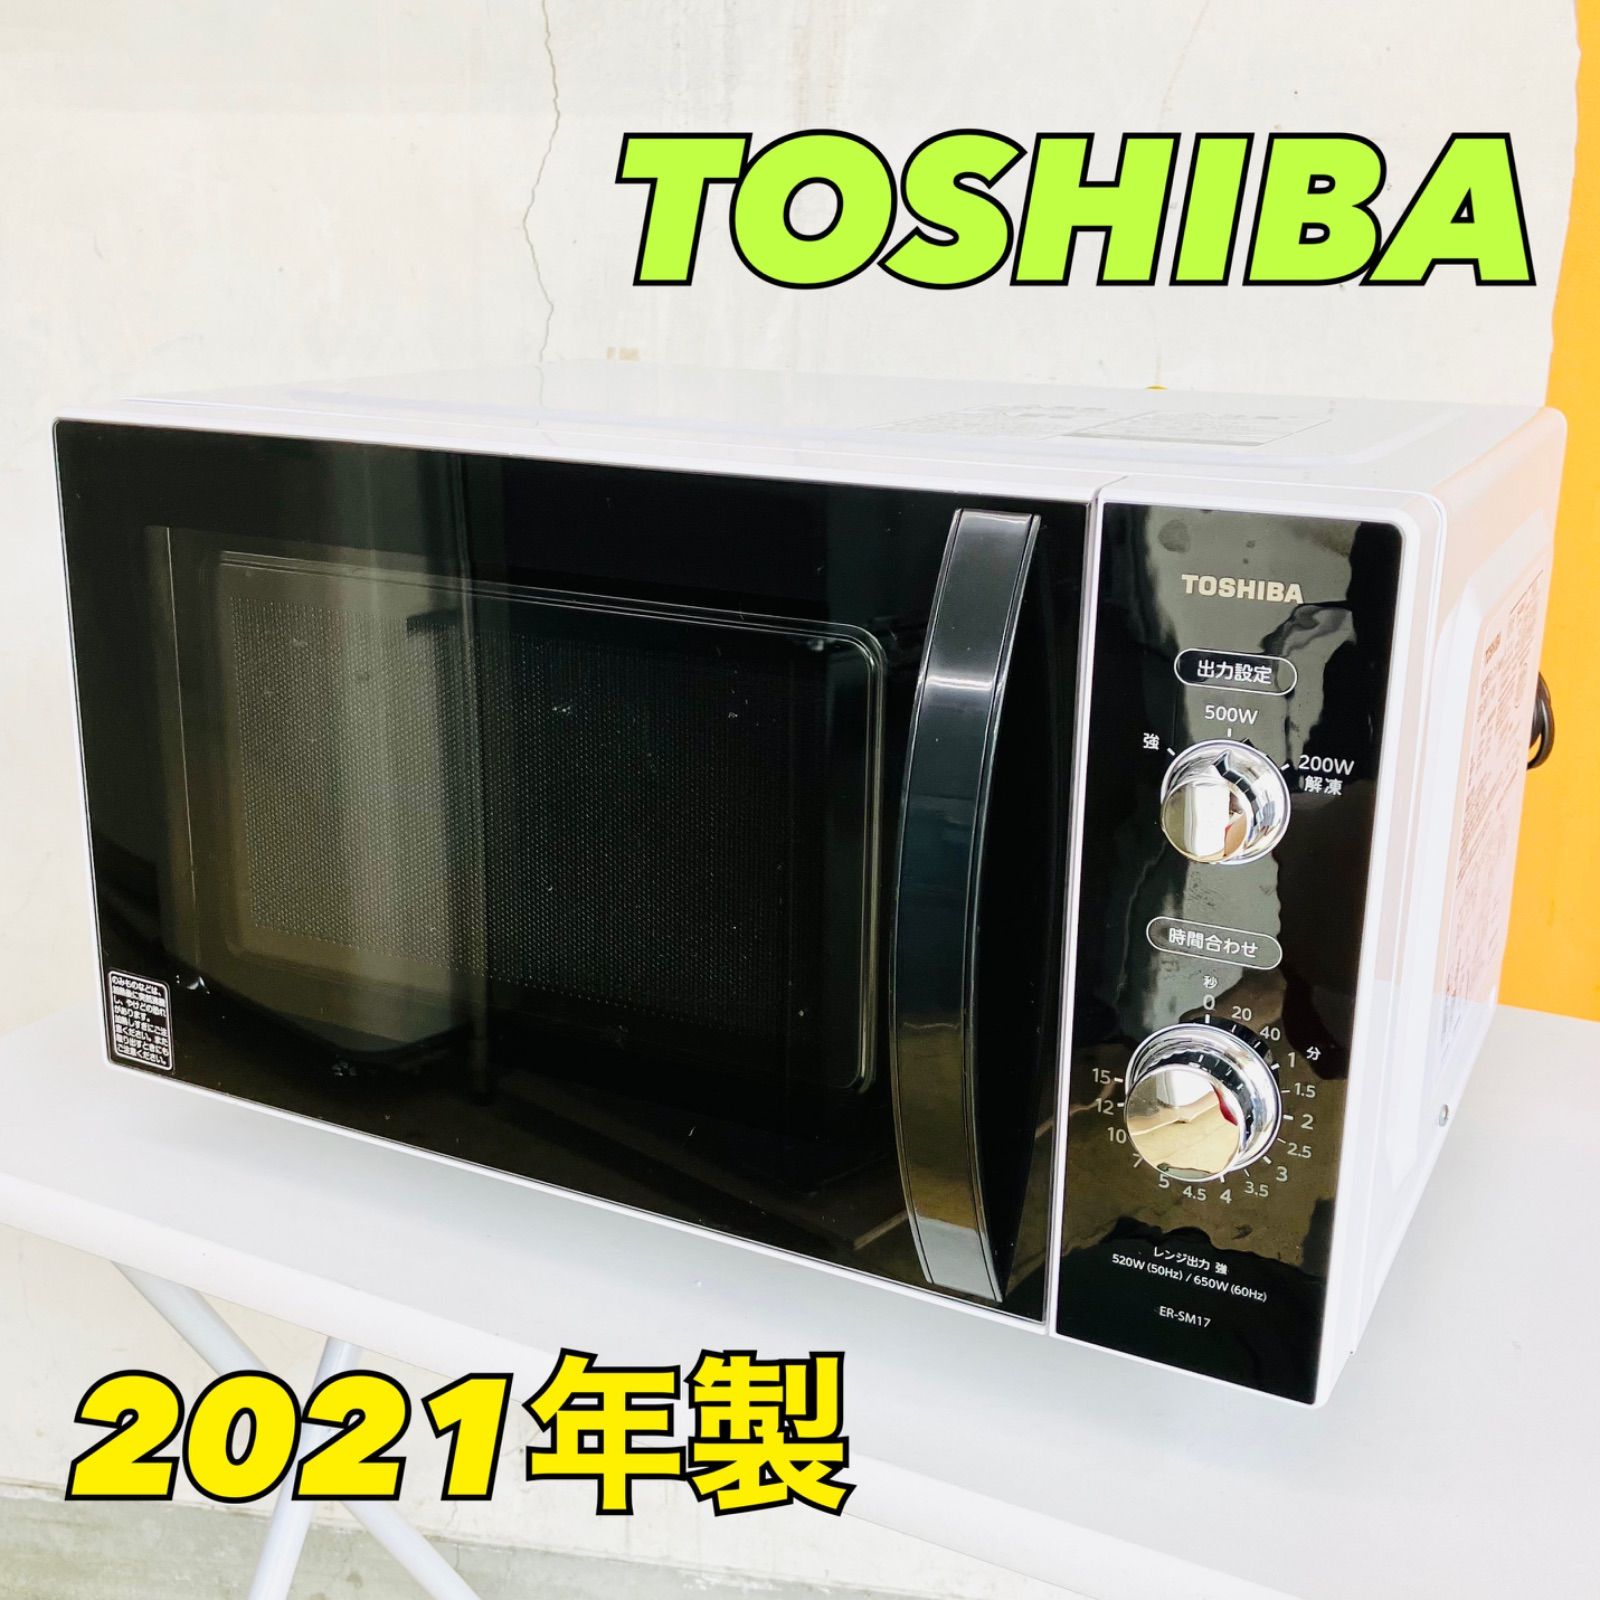 TOSHIBA ER-SM17 東芝 電子レンジ - 電子レンジ・オーブン